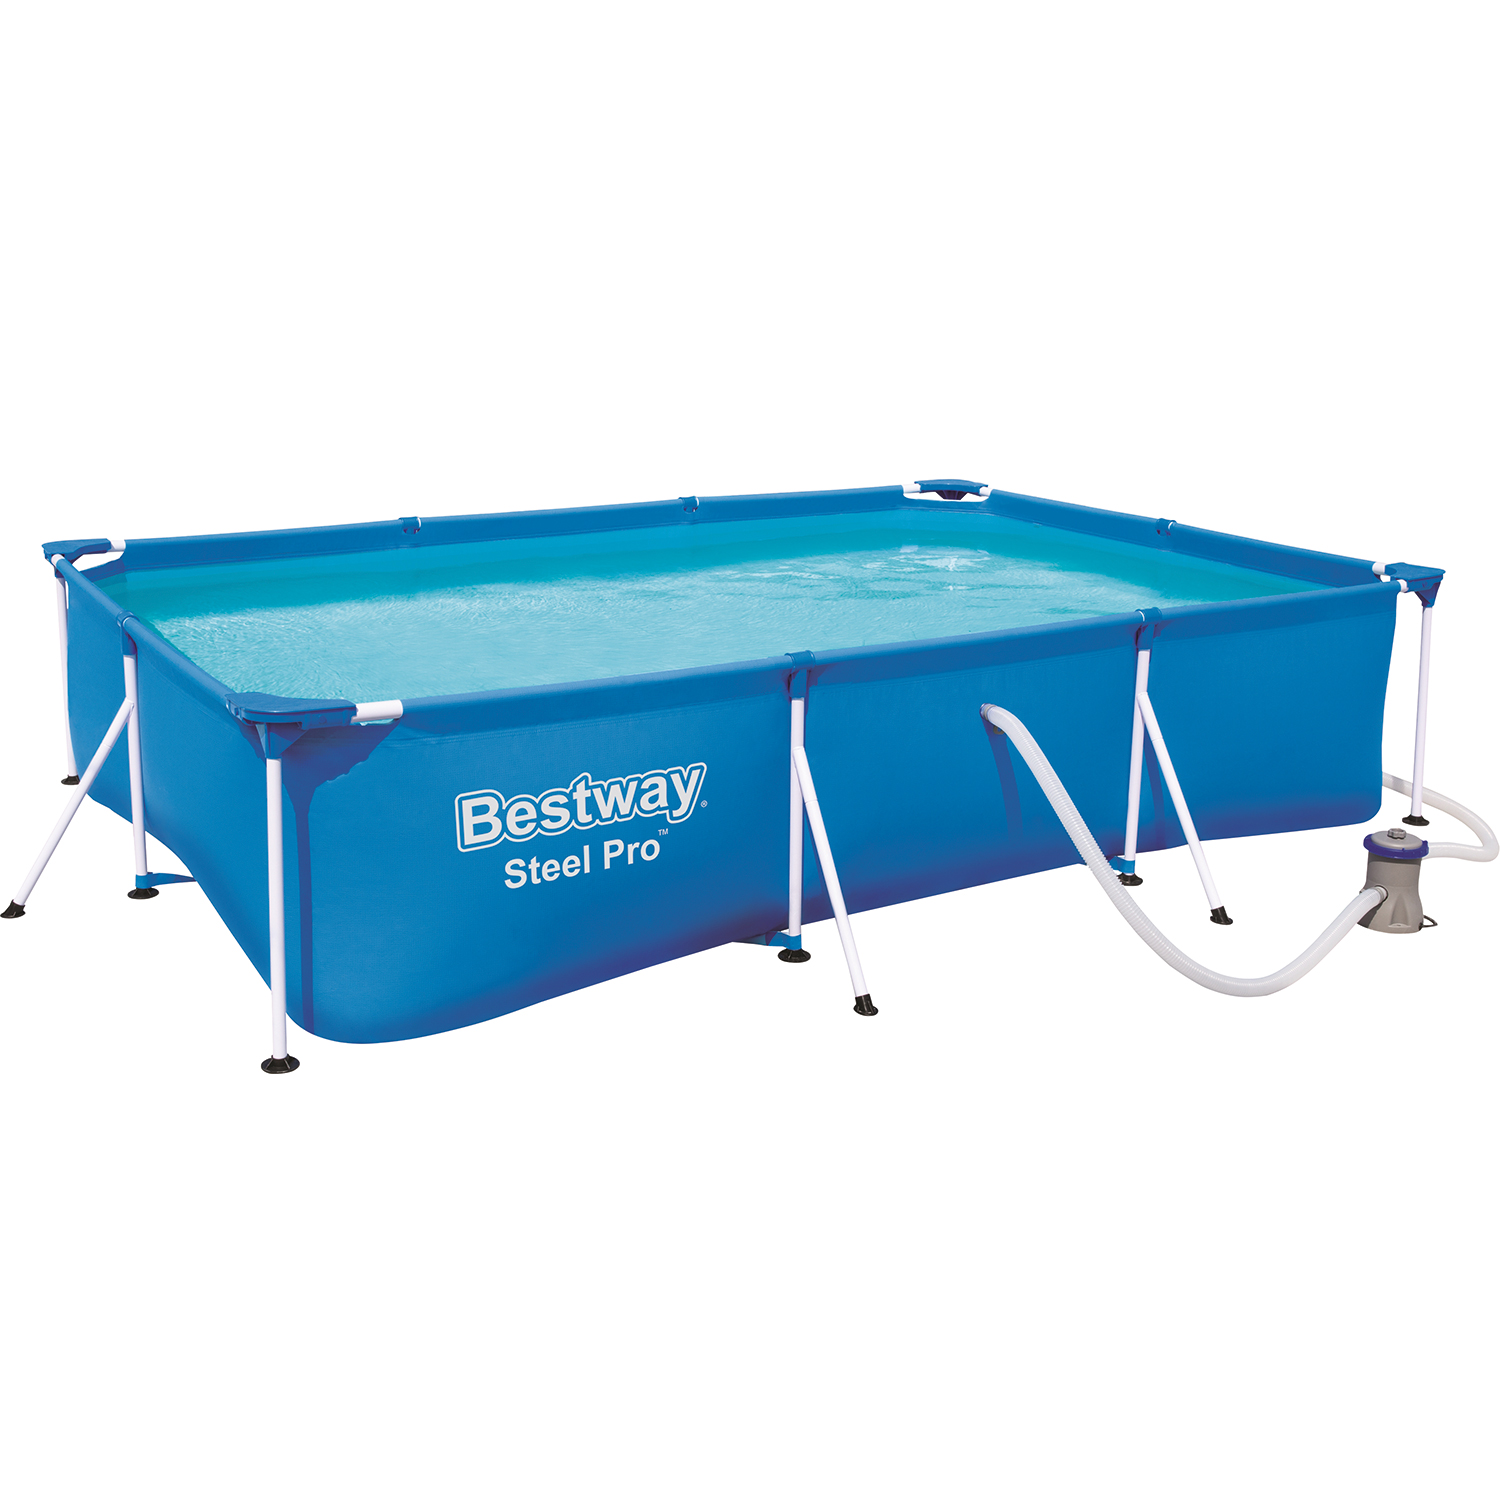 Bestway Steel Pro pool + filter pump 300 x 201 c